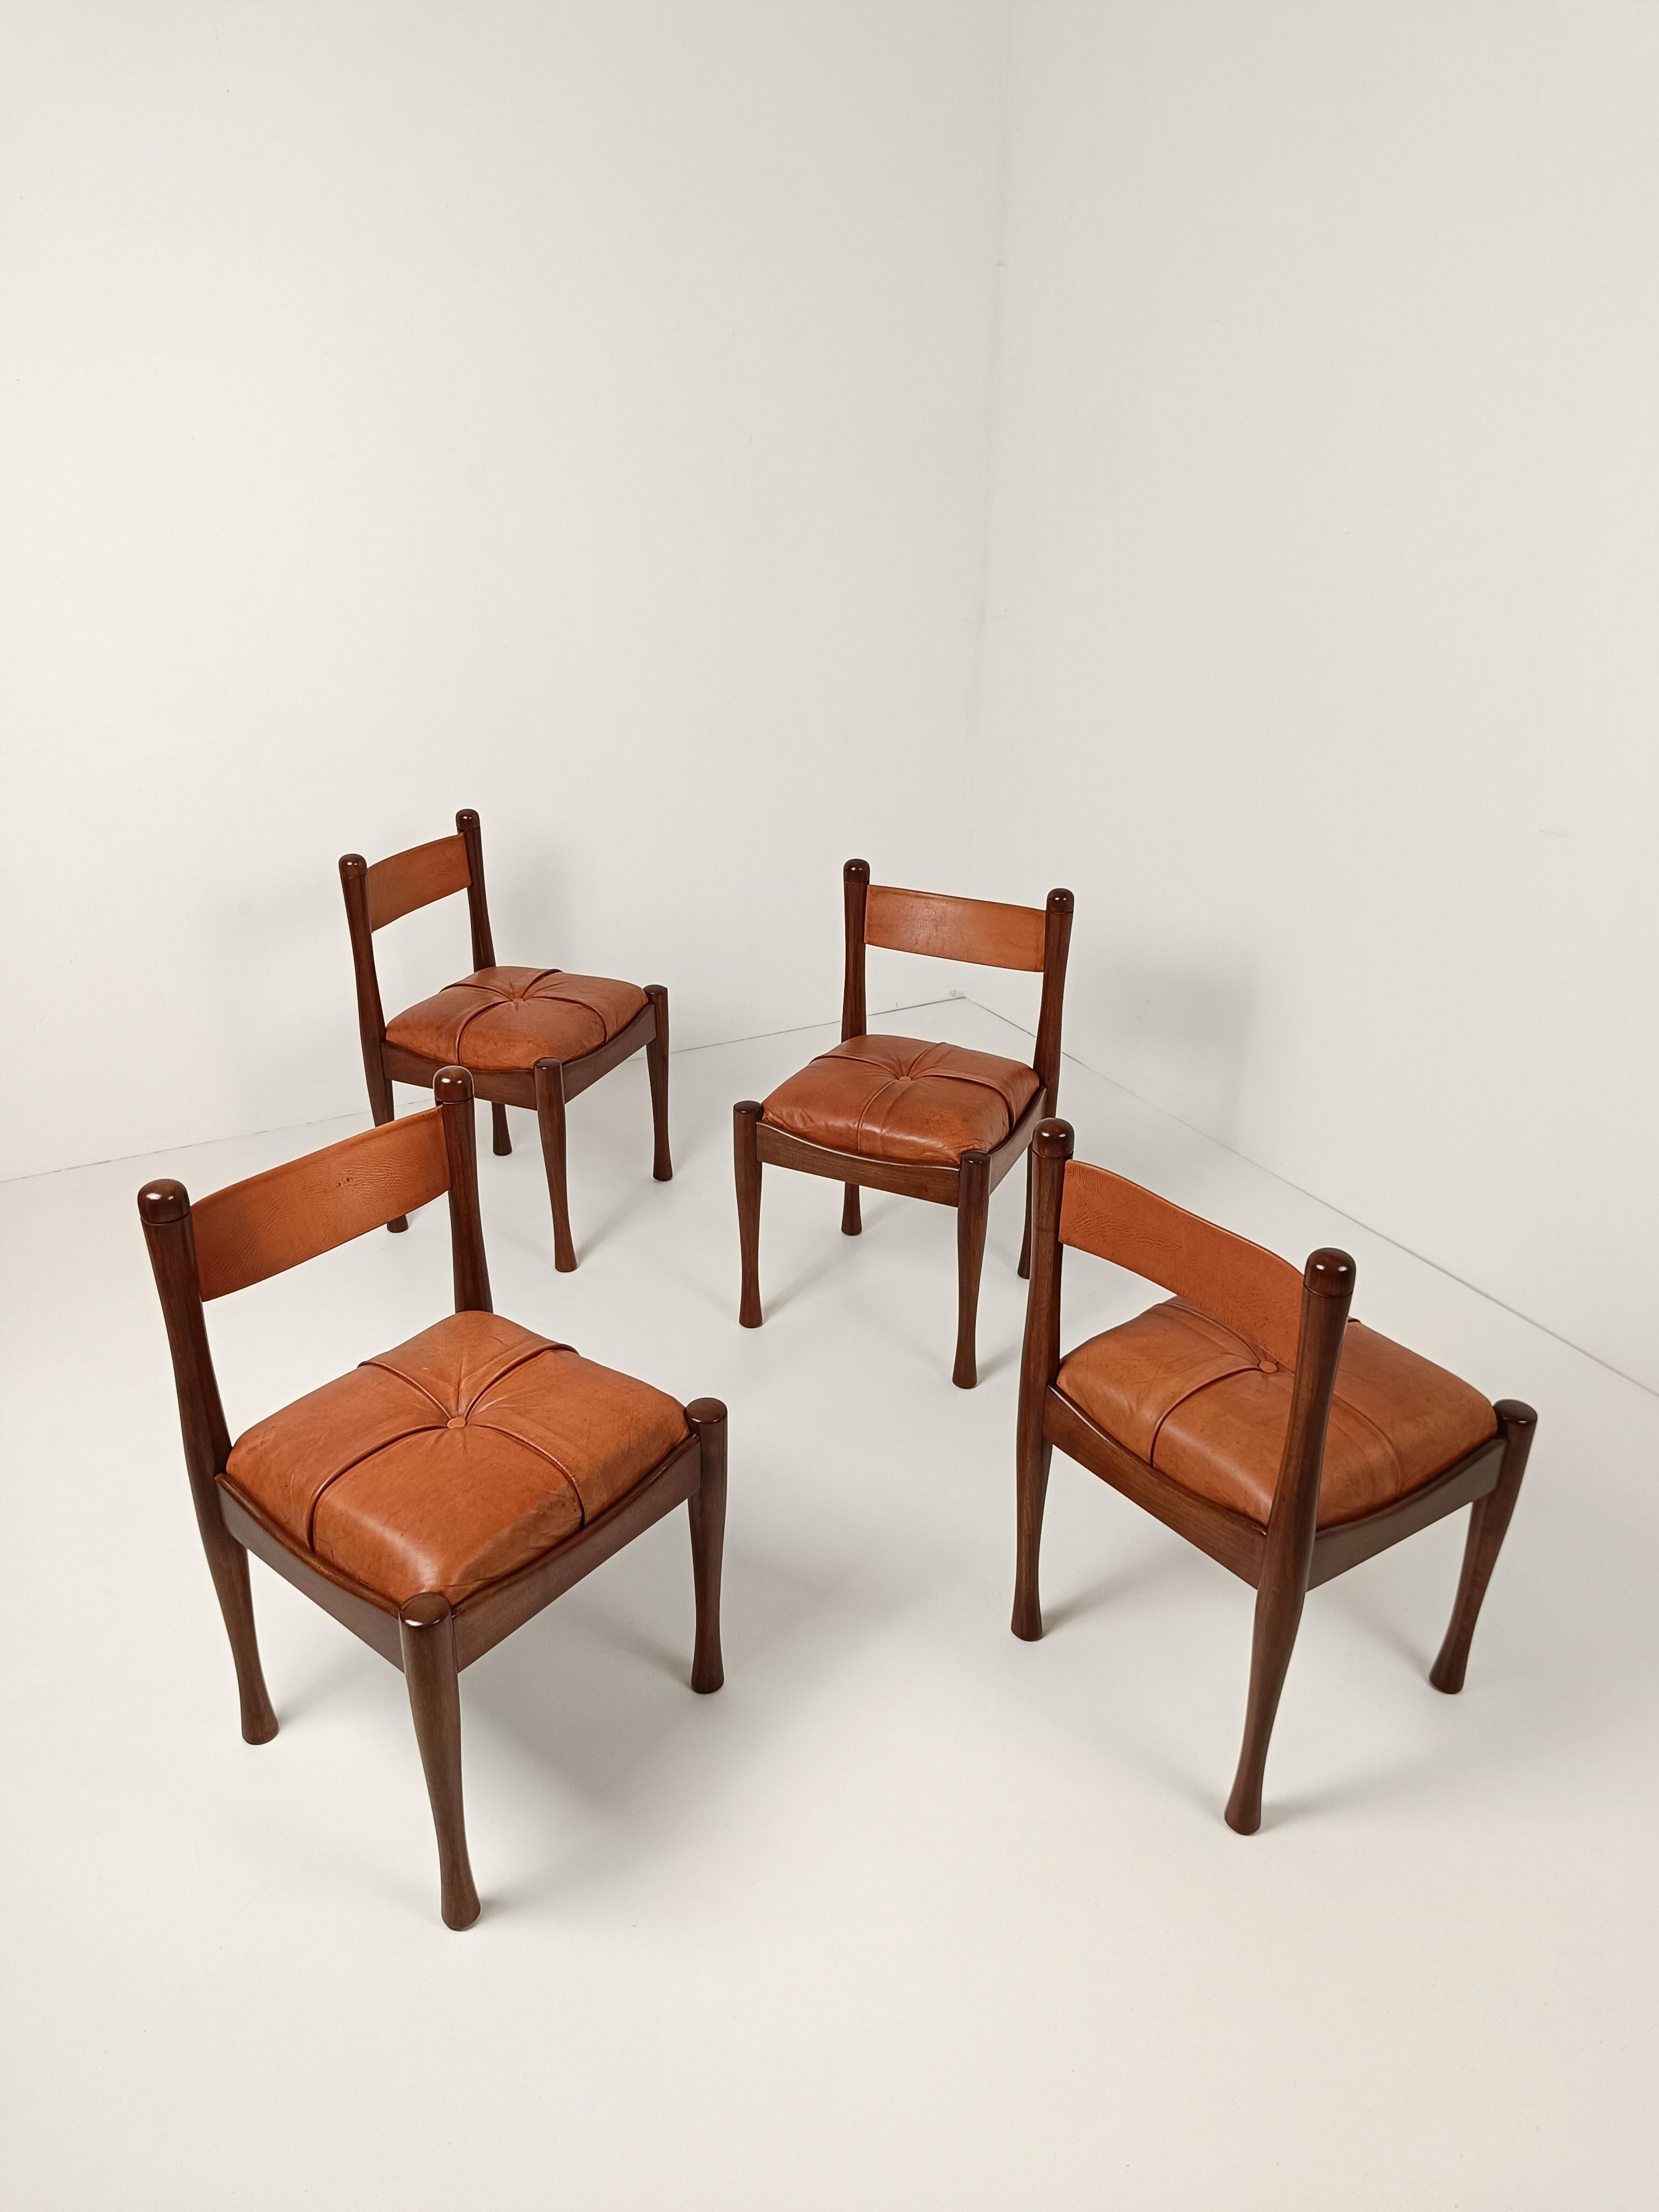 Ich biete Ihnen ein Set bestehend aus 4 Stühlen des Modells 620 an, die Mitte der 60er Jahre von Silvio Coppola für die historische Luxusmöbelmarke Bernini entworfen wurden.
Dieser Stuhl verkörpert voll und ganz den Stil, für den die